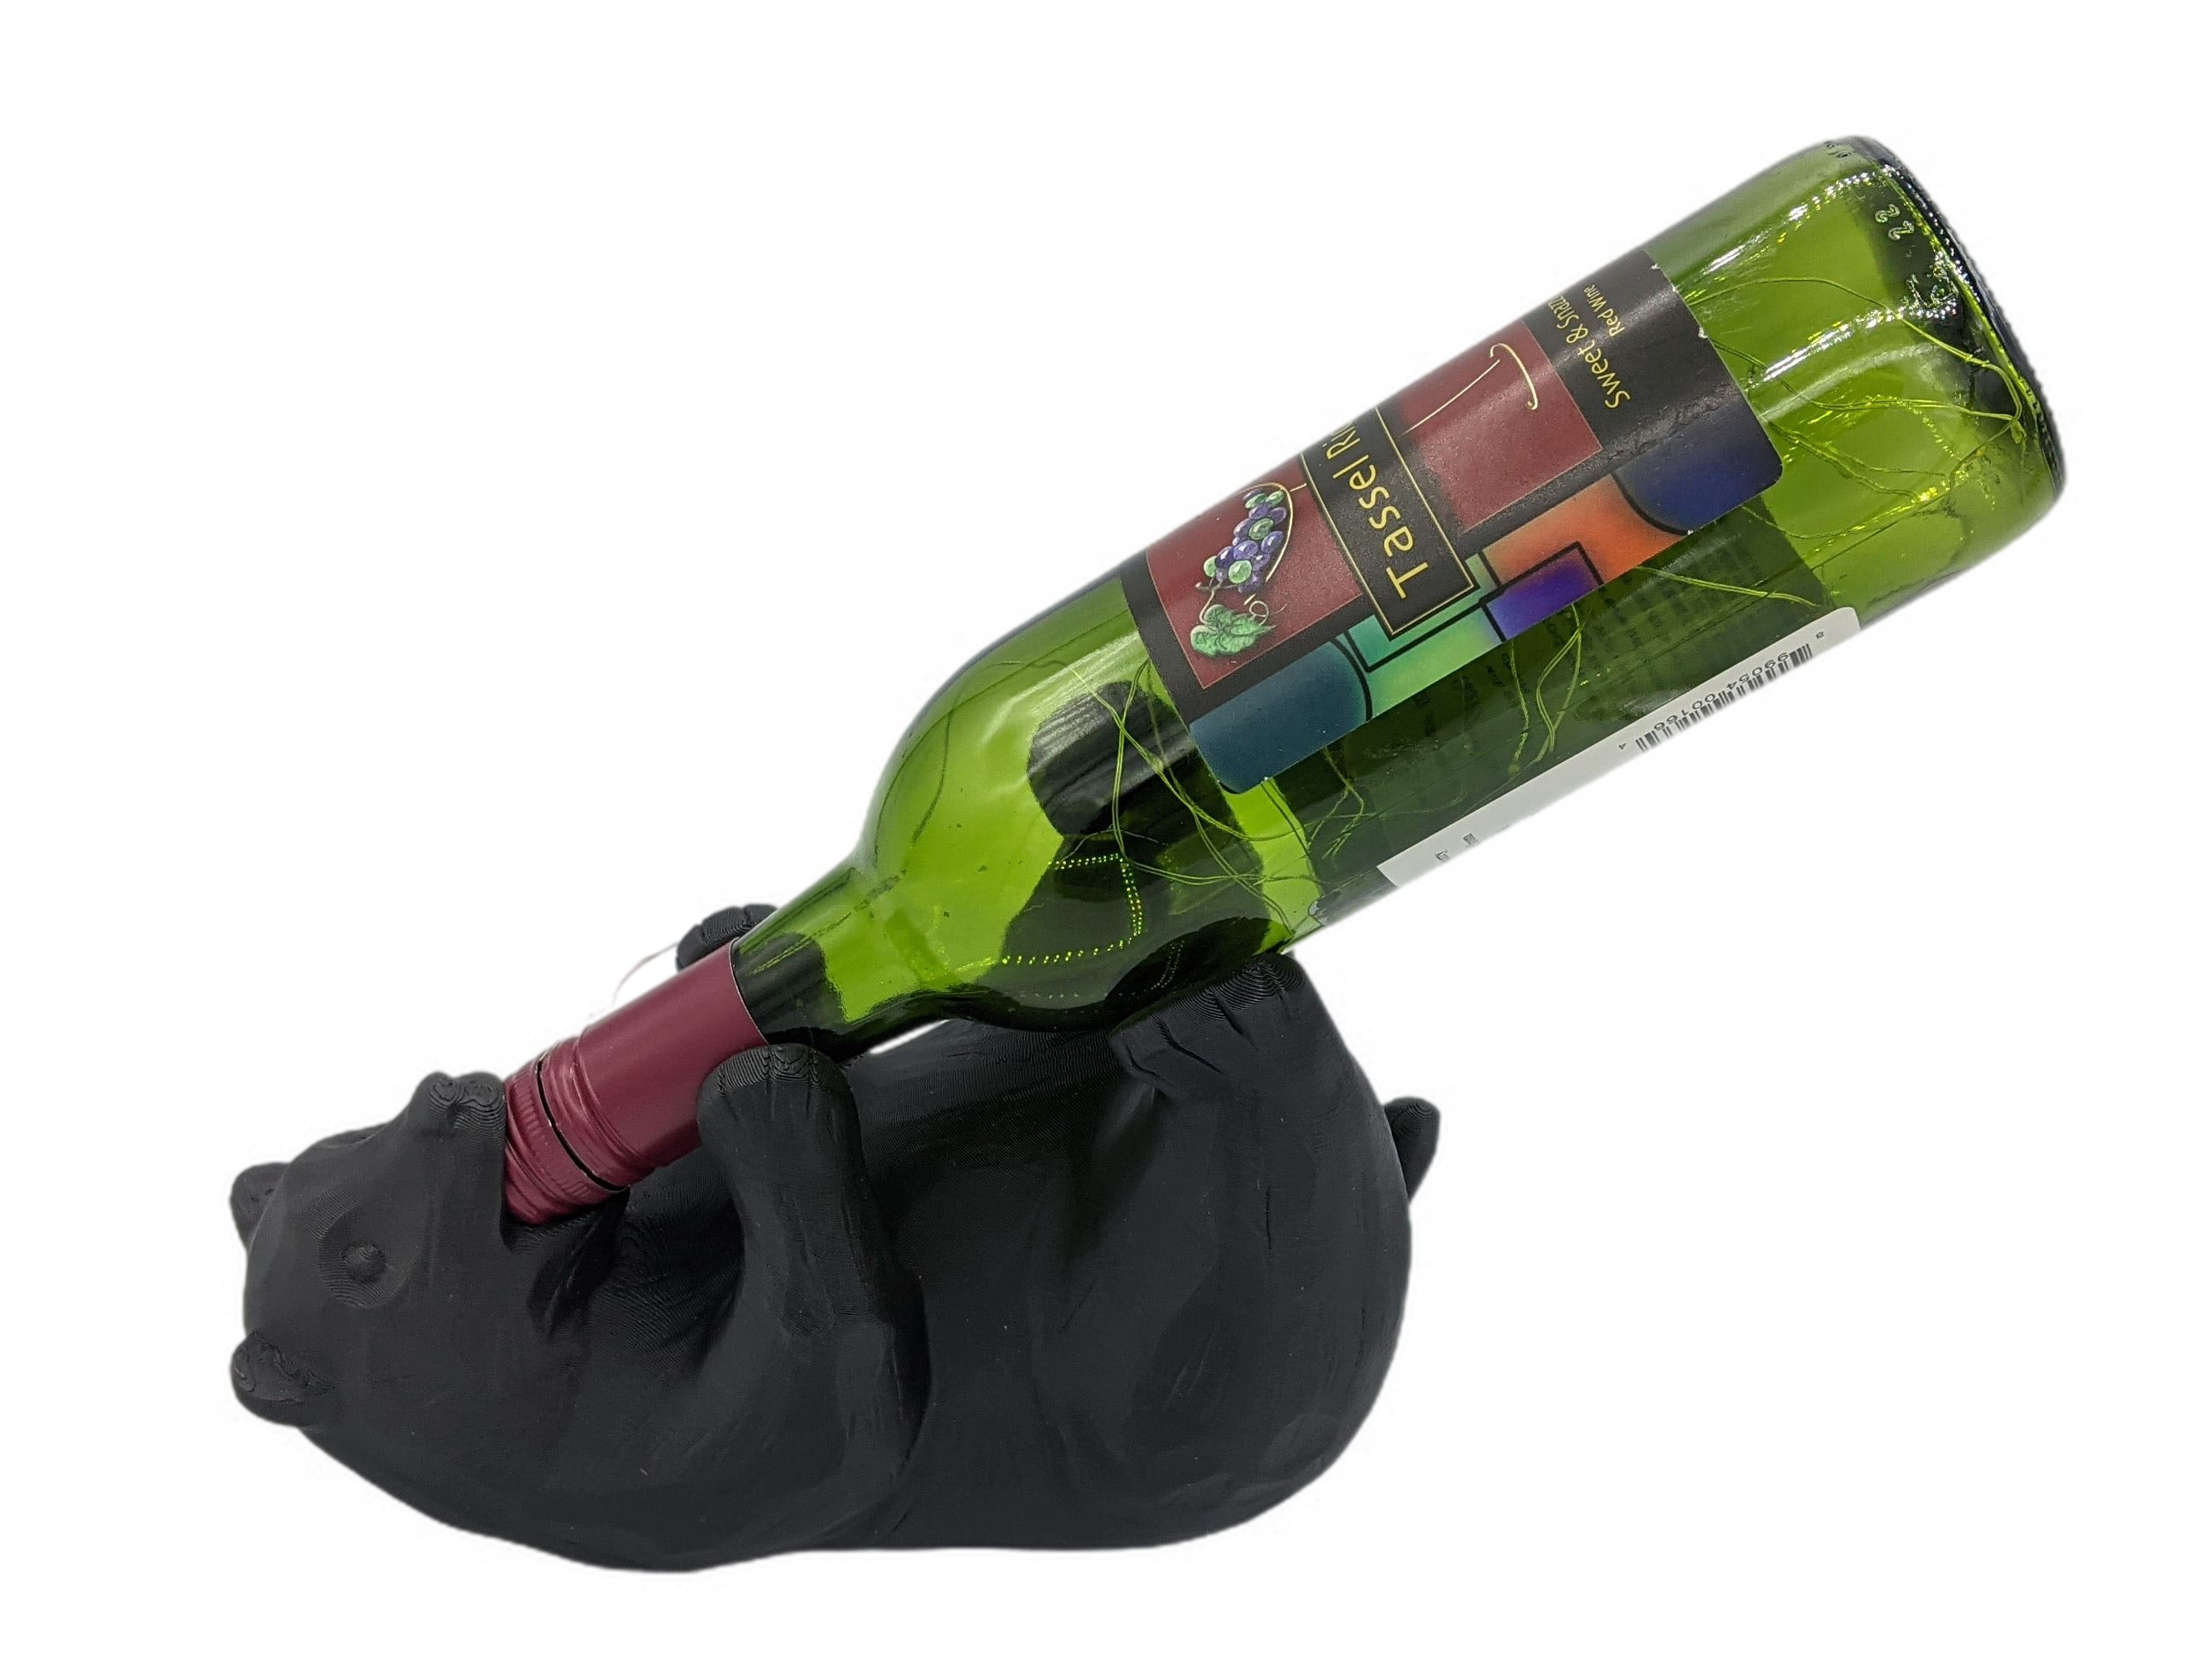 Bear Wine Bottle Holder